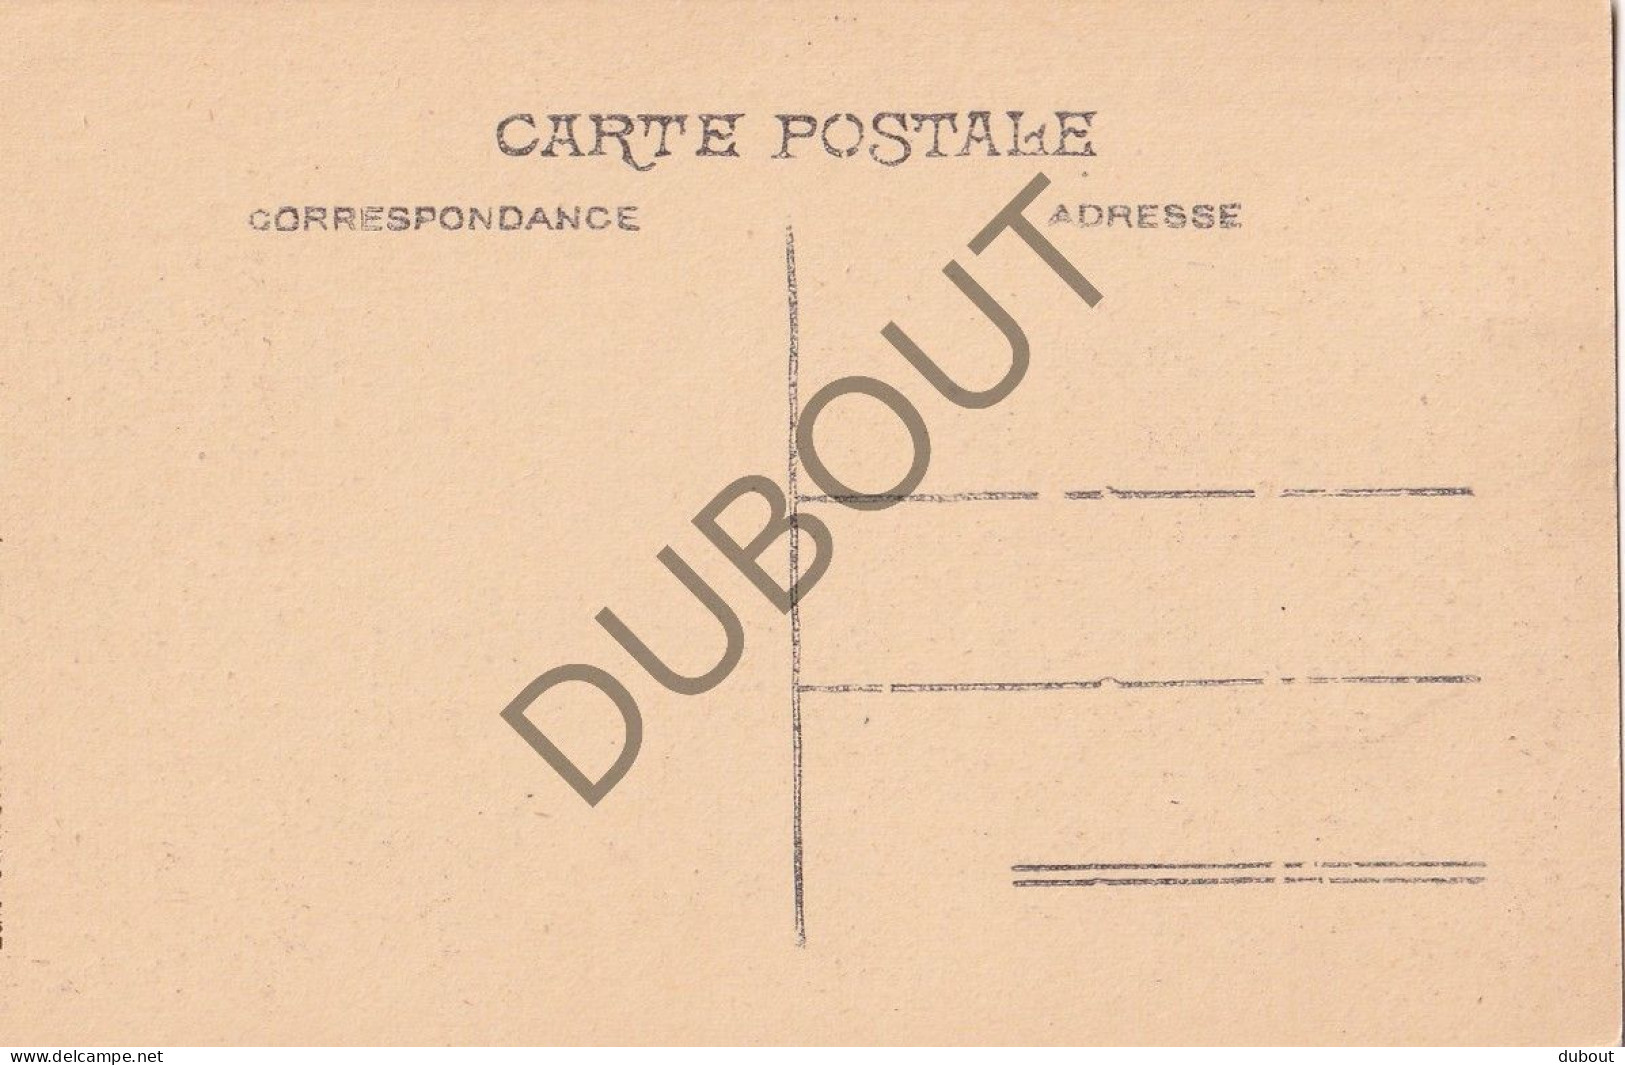 Postkaart/Carte Postale - Bree - Rue Haute (C4297) - Bree